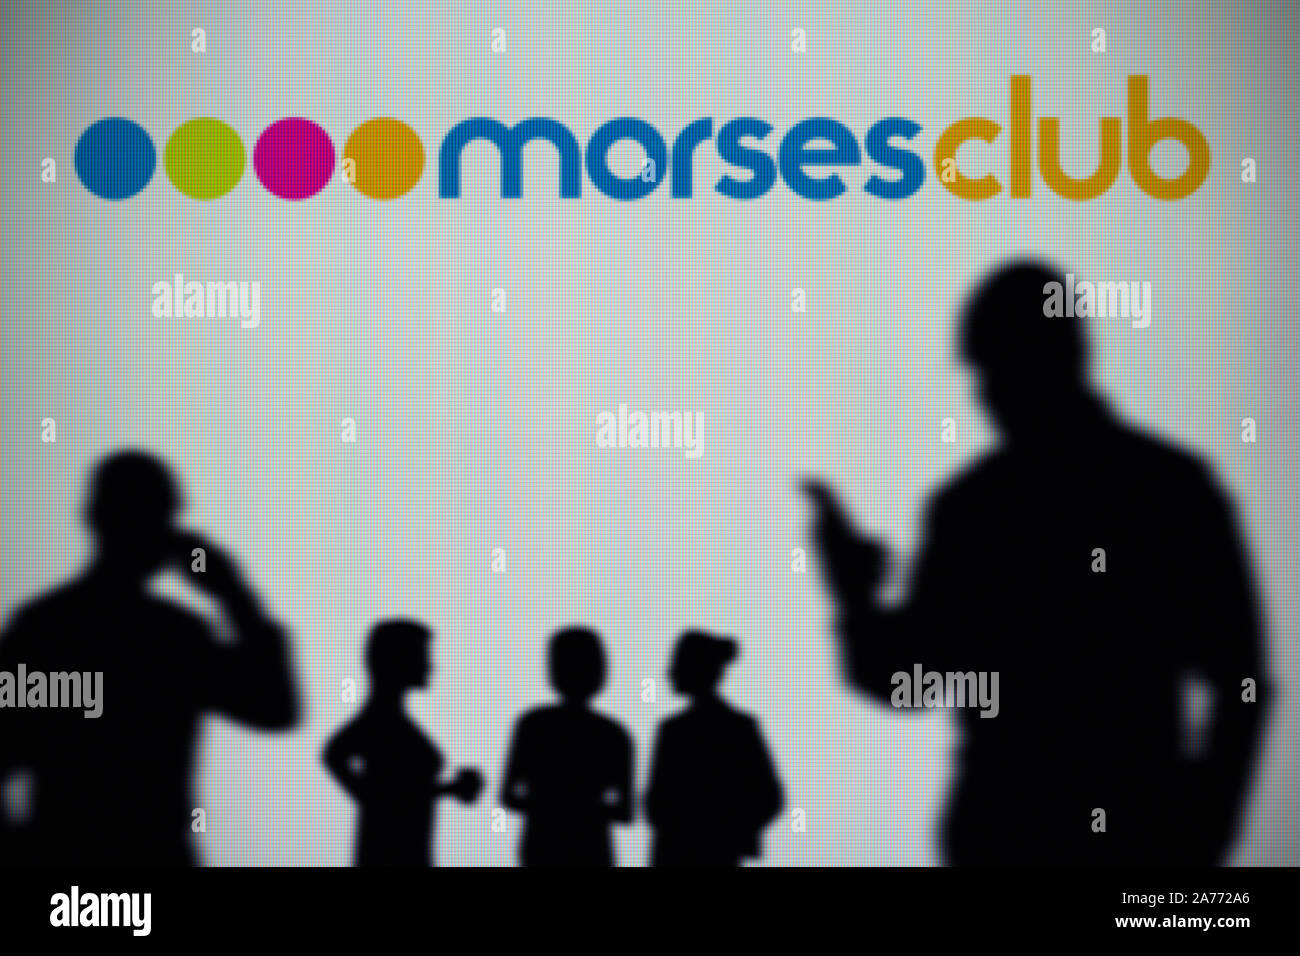 Il Morses logo del Club è visibile su uno schermo a LED in background mentre si profila una persona utilizza uno smartphone (solo uso editoriale) Foto Stock